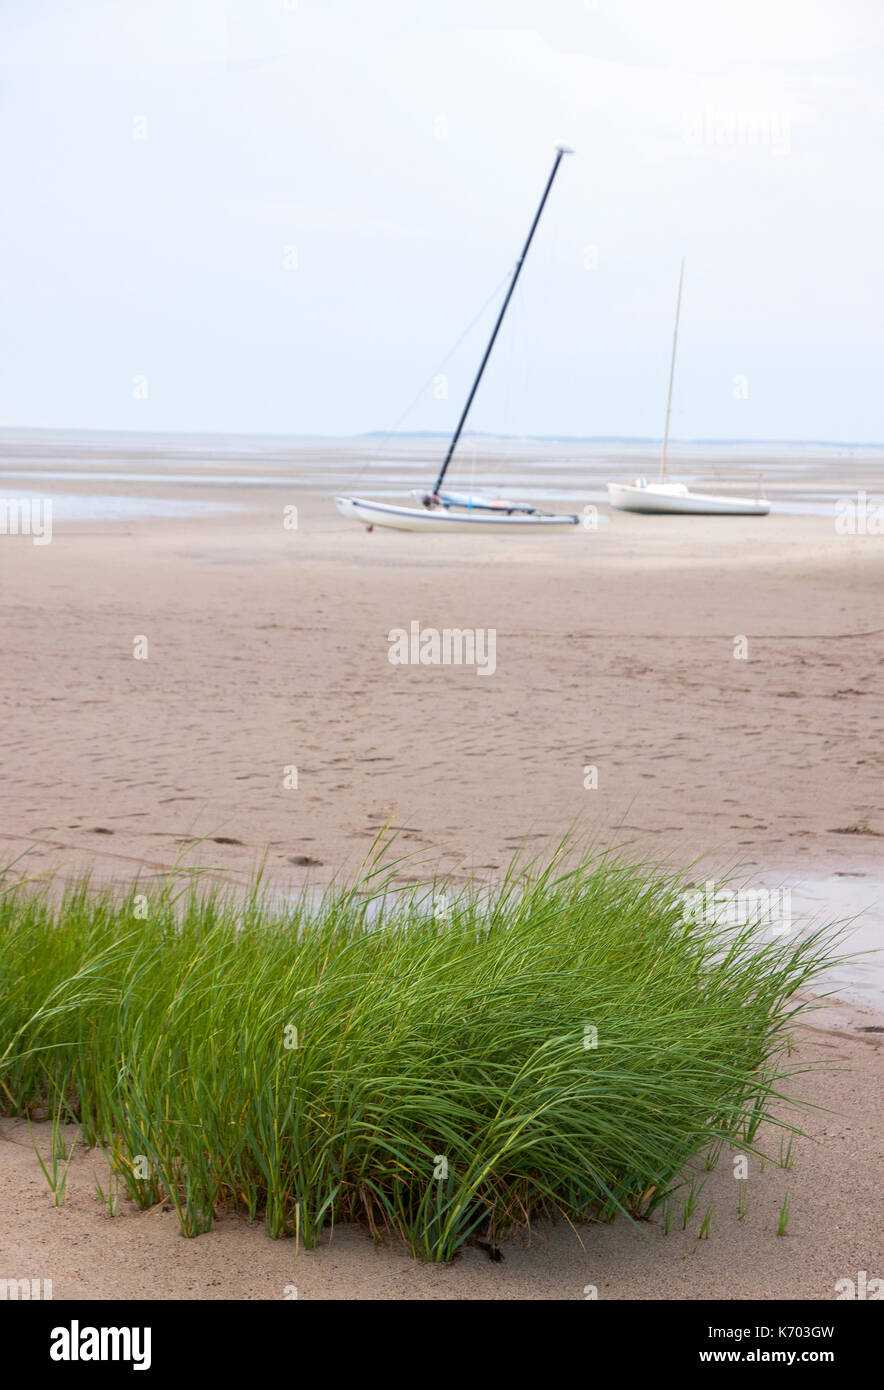 Barche a vela a terra in sabbia a bassa marea con piante fanerogame in primo piano. Eastham, Massachusetts, Cape Cod, STATI UNITI D'AMERICA. Foto Stock